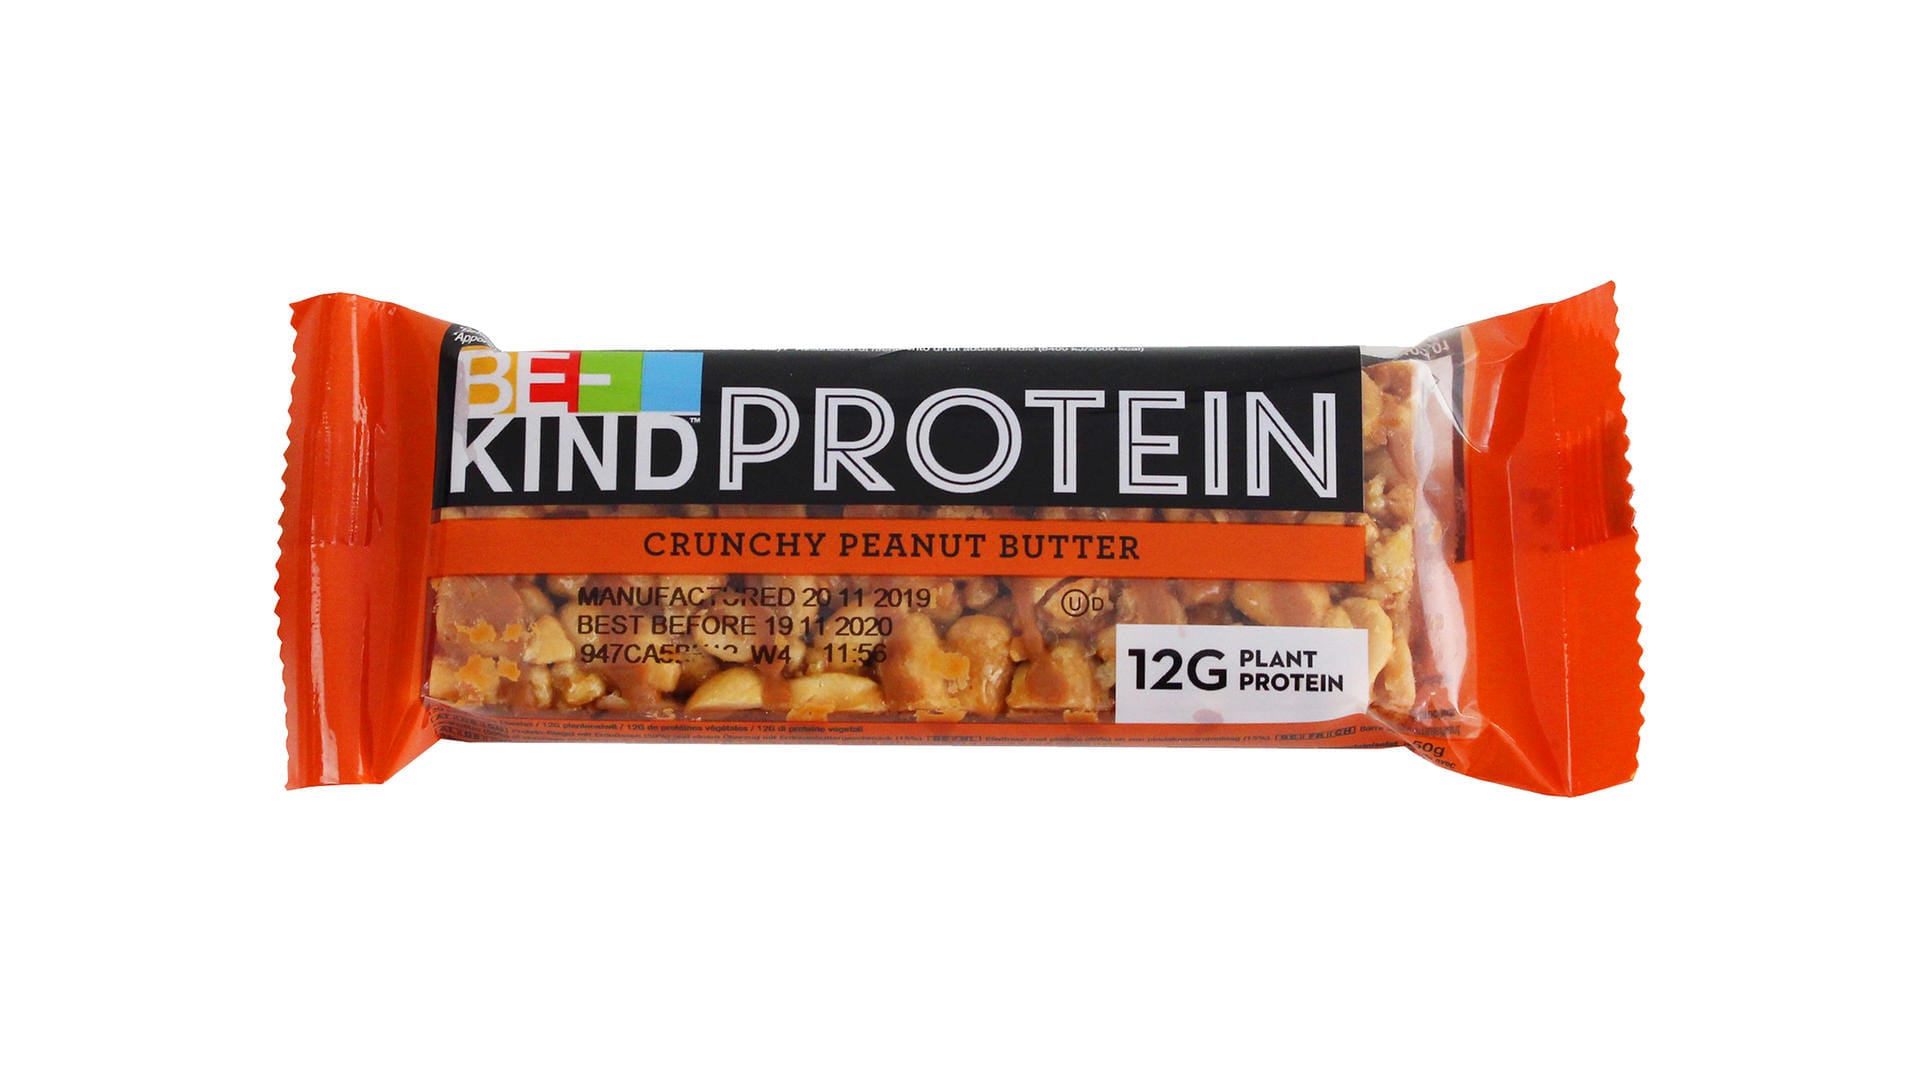 Von wegen Sport-Snack: Der "Be-Kind Protein Riegel Crunchy Peanut Butter" von Mars besteht zur Hälfte aus Fett und Zucker.